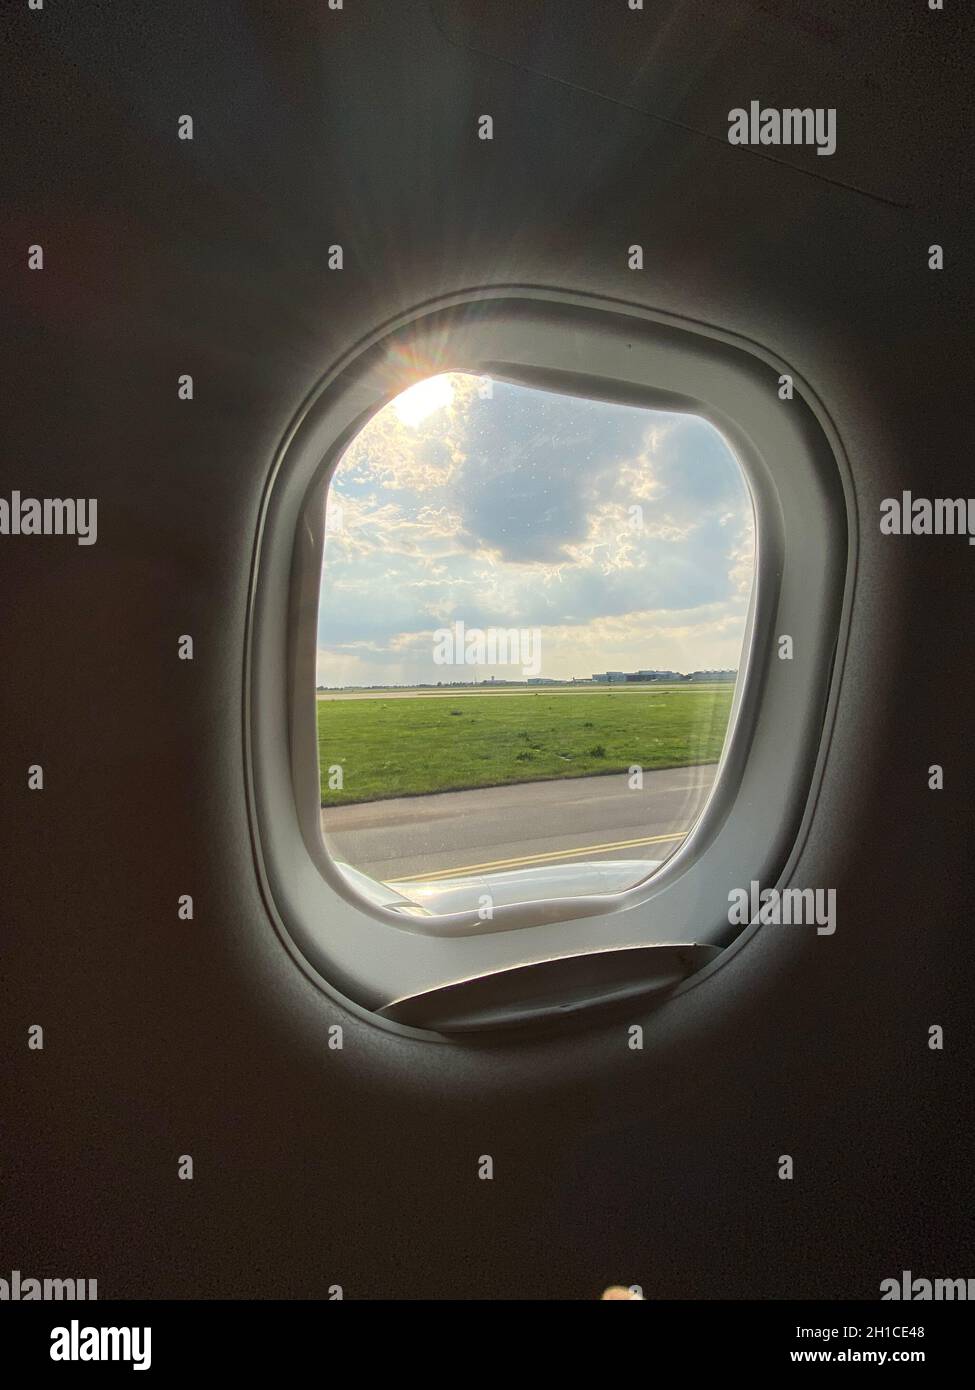 Airfield de l'aéroport vu à travers une fenêtre d'avion avant le décollage ou après l'atterrissage Banque D'Images